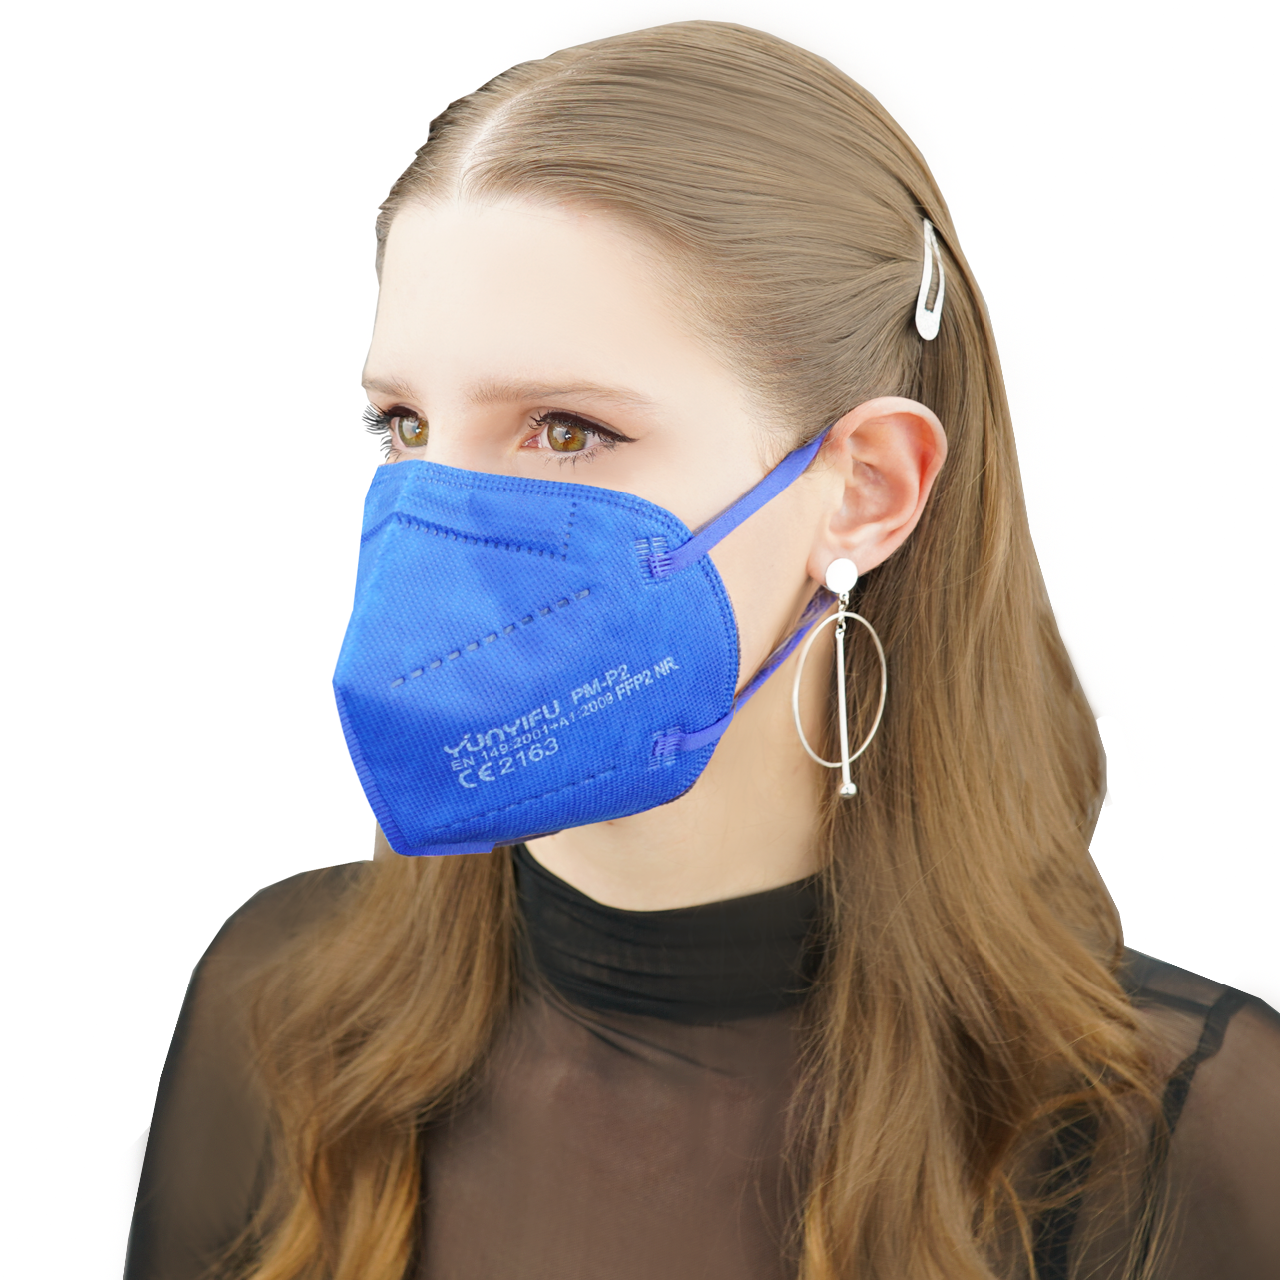 Atemschutz Mundschutz FFP 2 Maske, blau, VE = 10 Stück